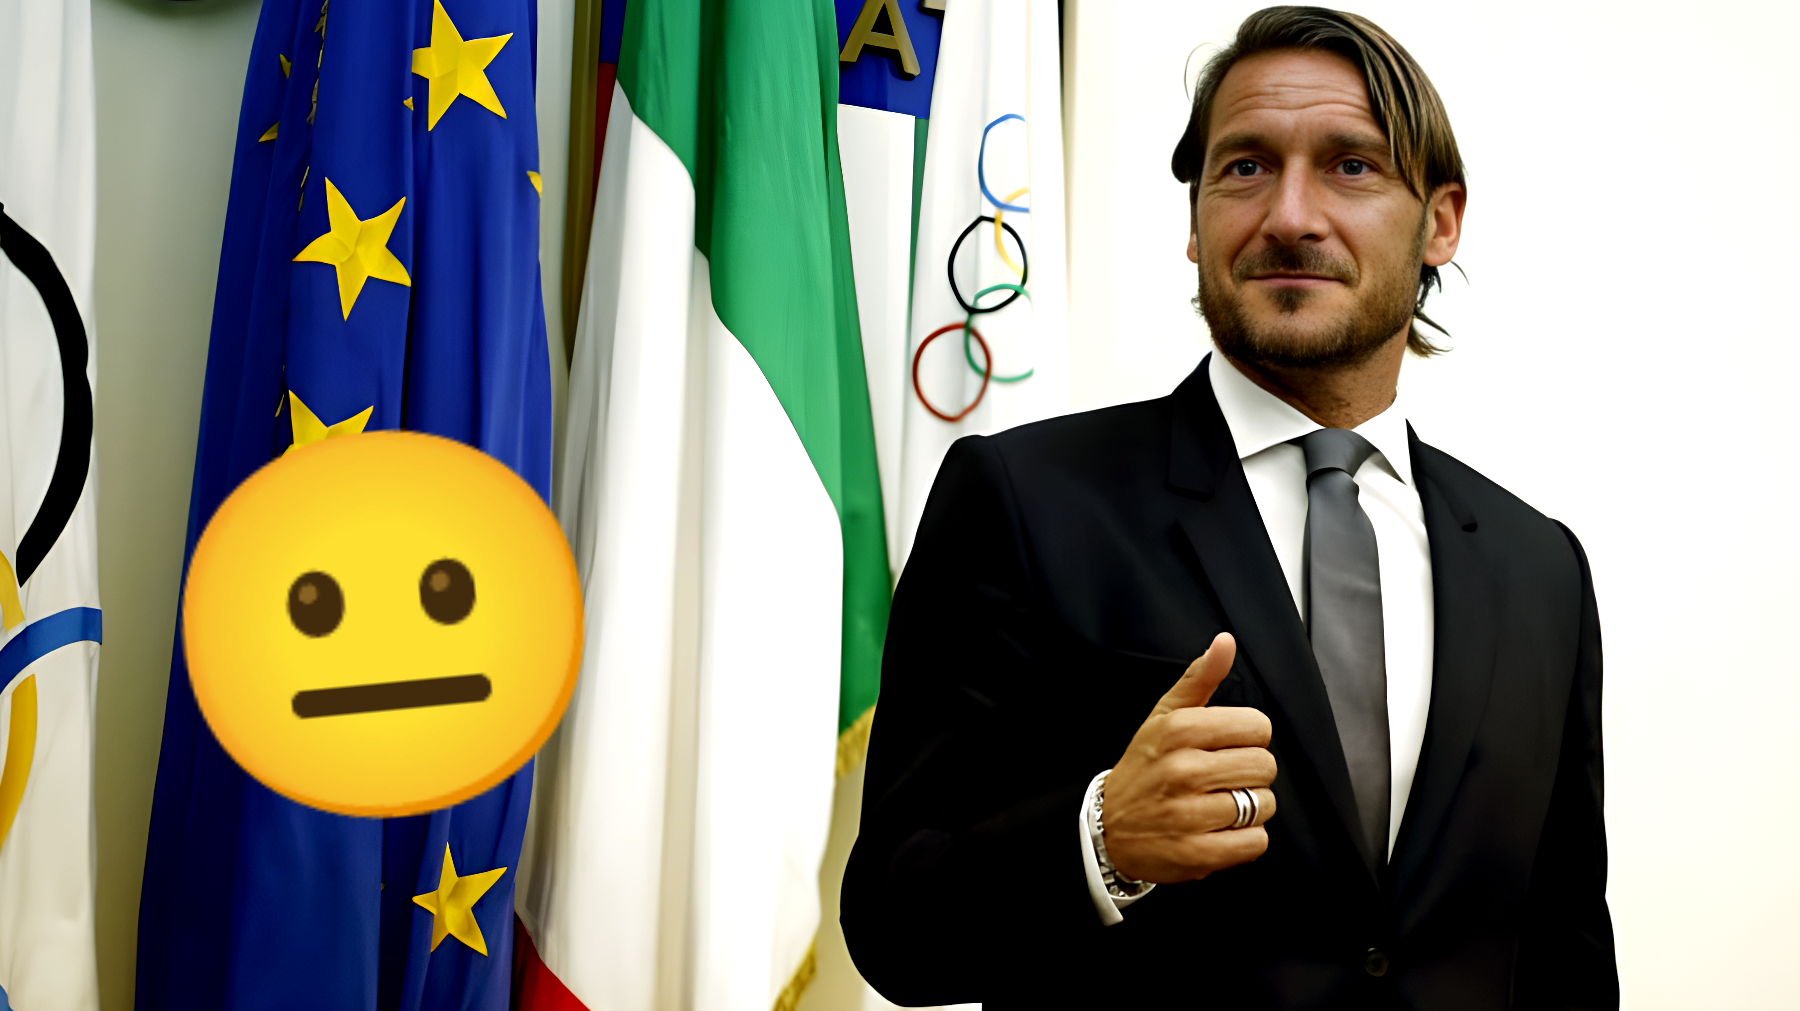 Francesco Totti, la guardia di finanza fa irruzione a casa dell'ex capitano della Roma: cosa hanno trovato?